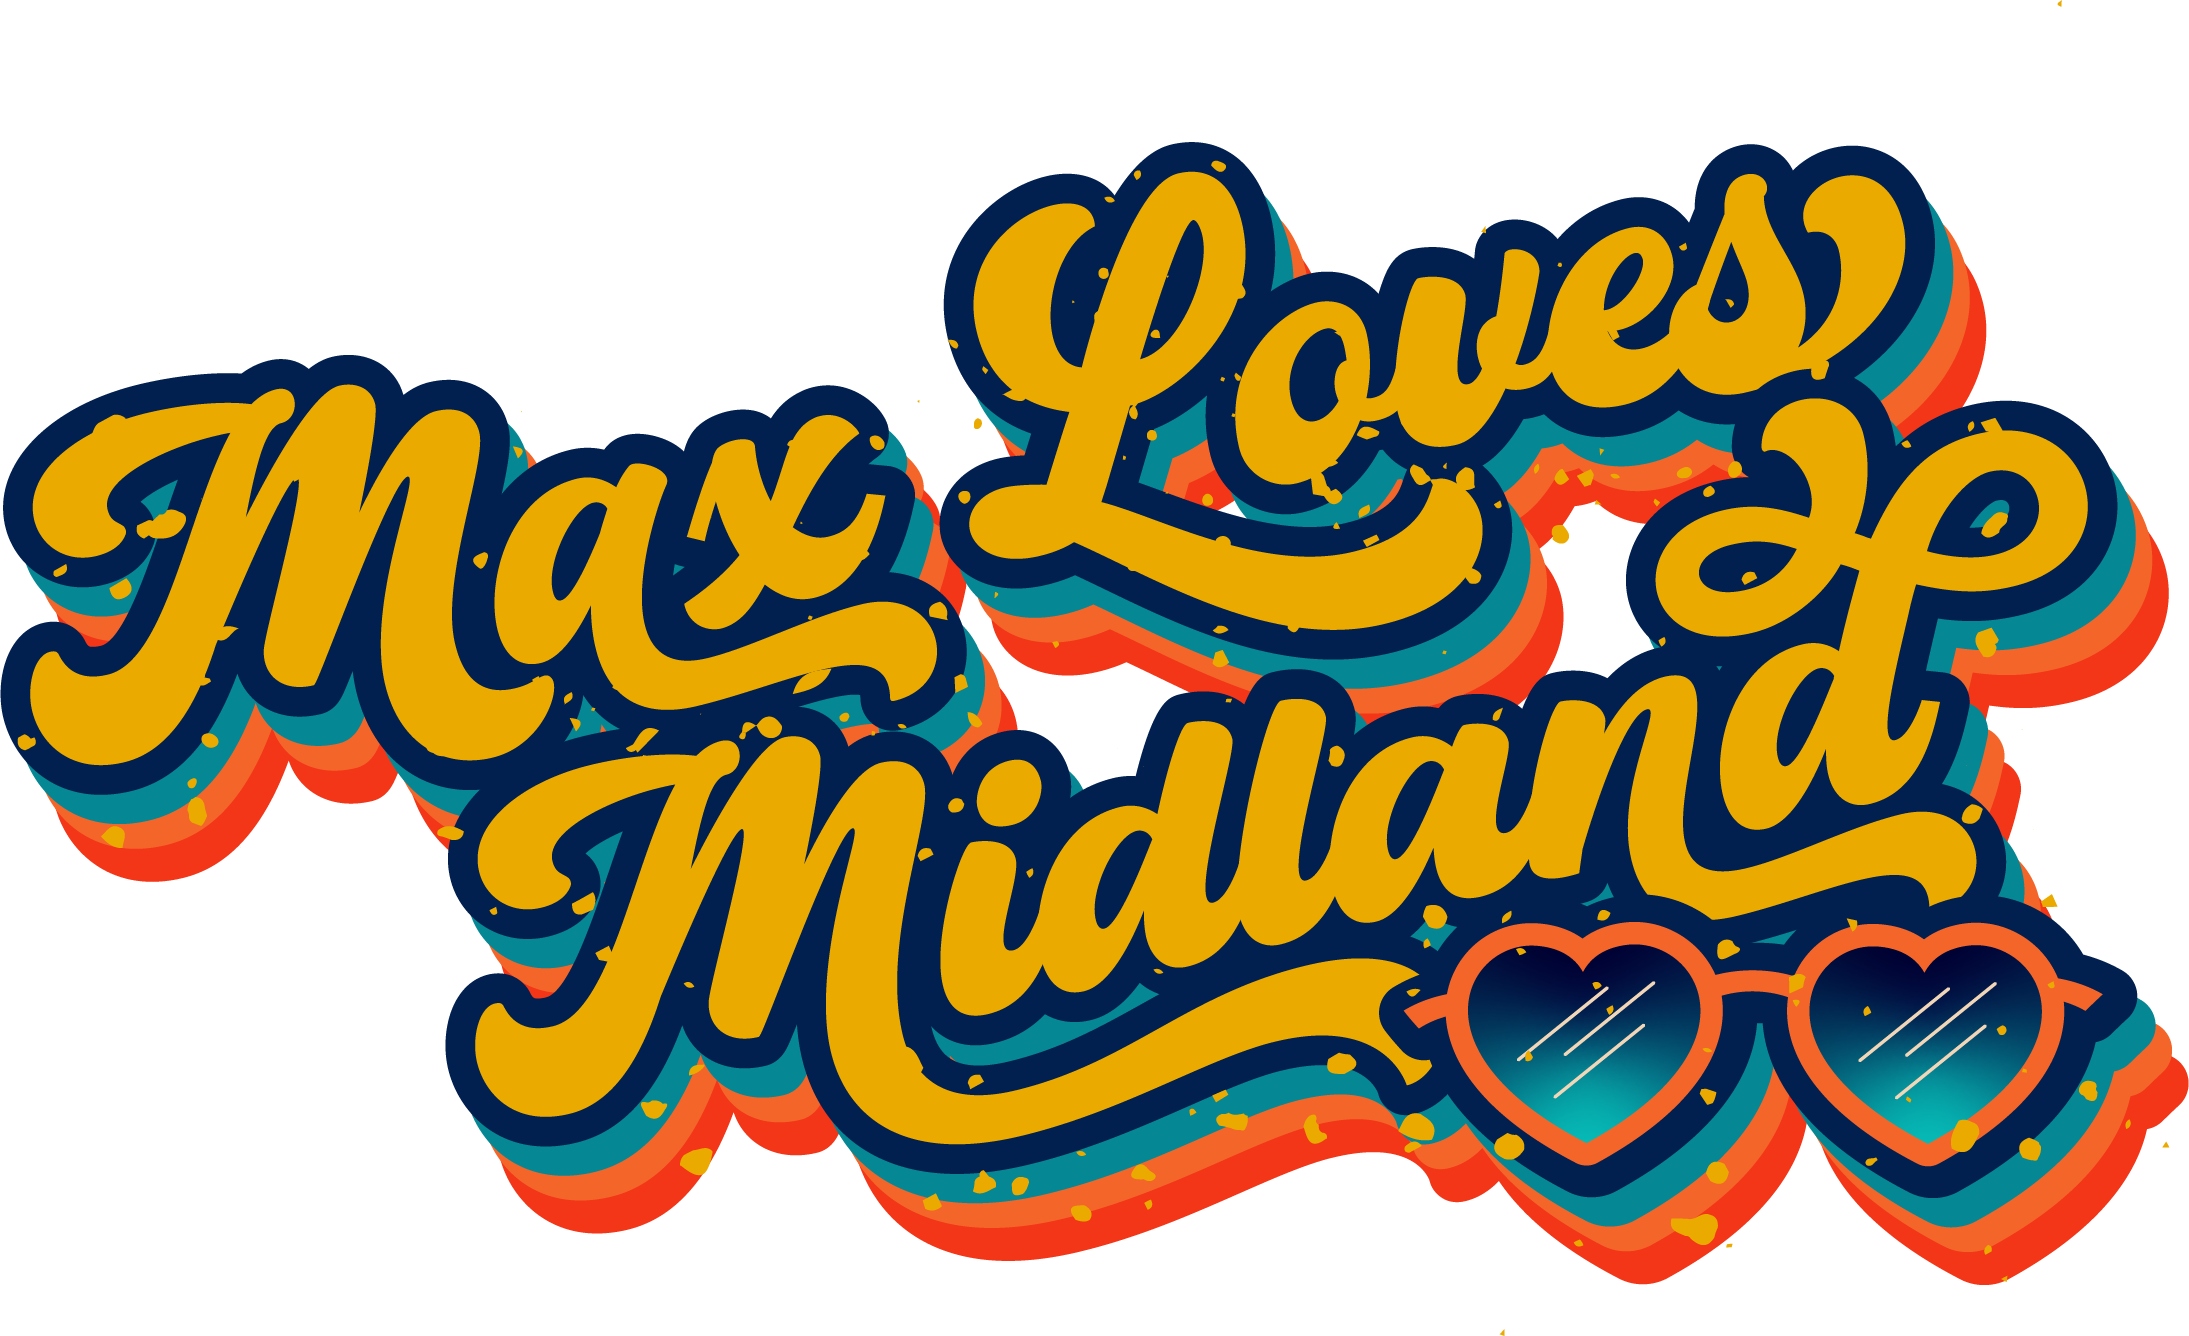 Max Loves Midland